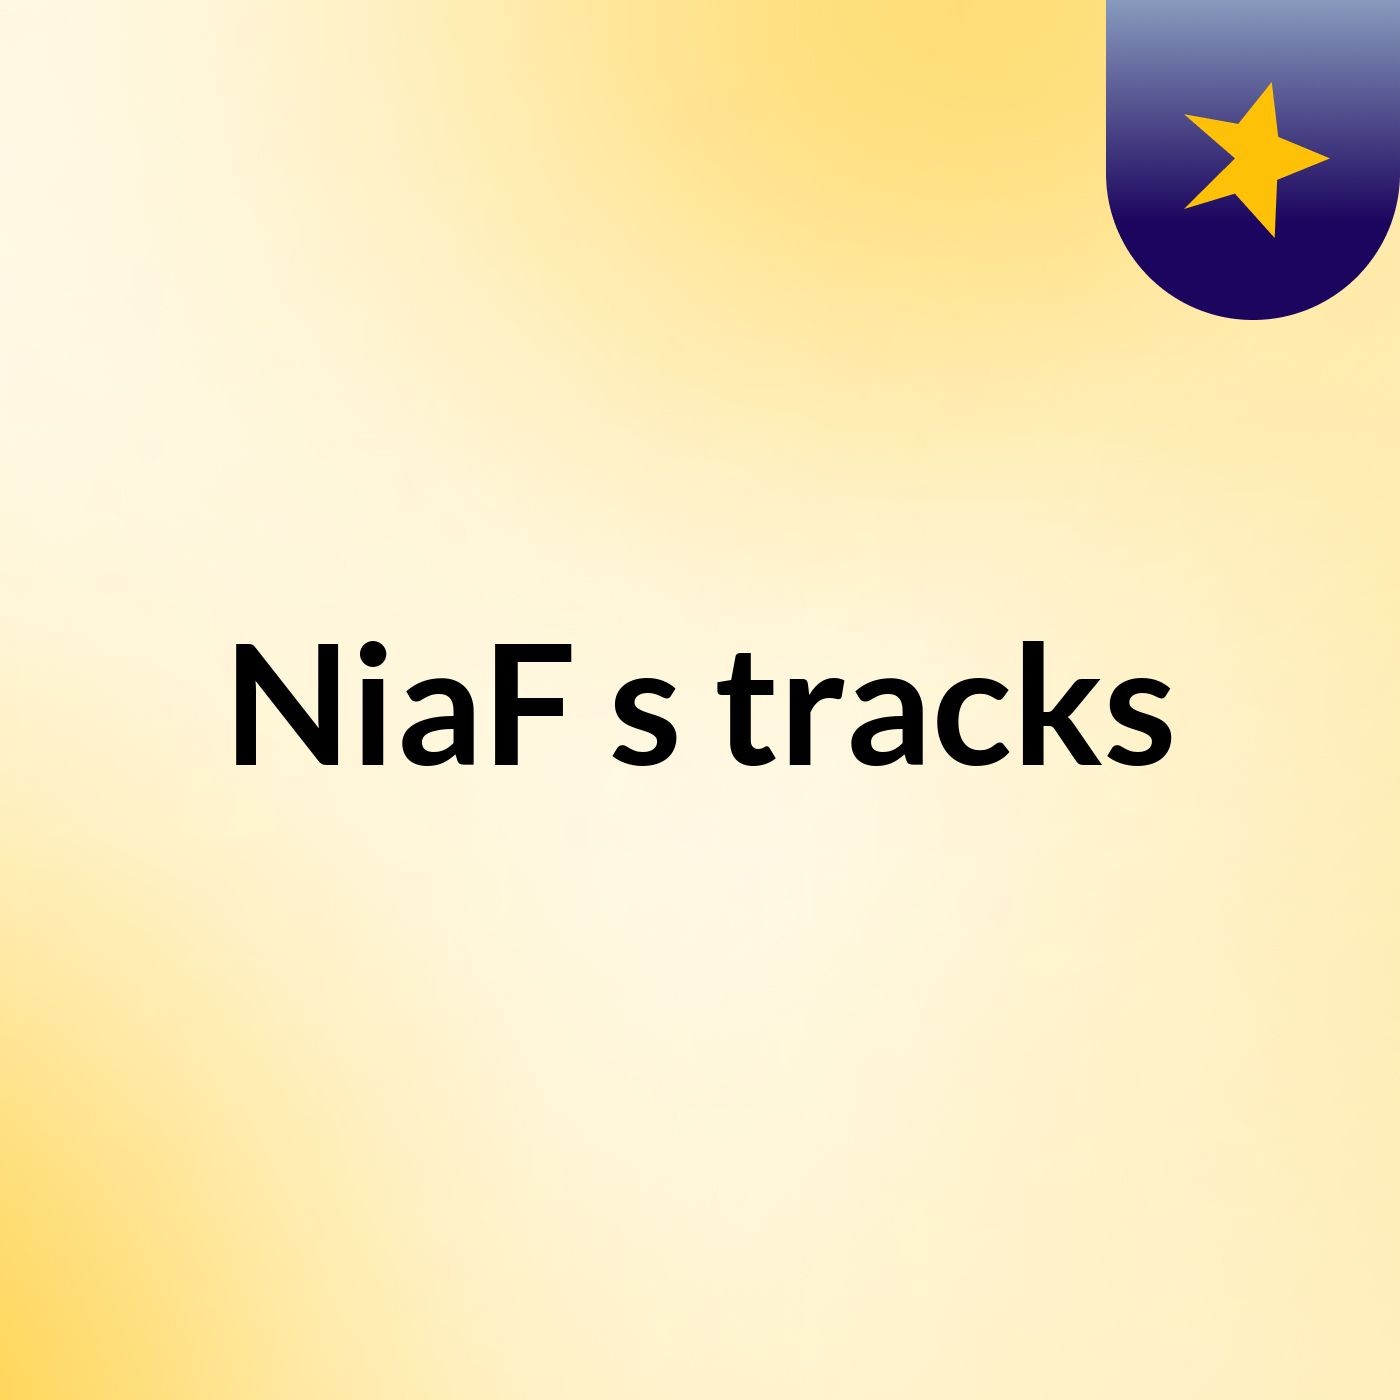 NiaF's tracks